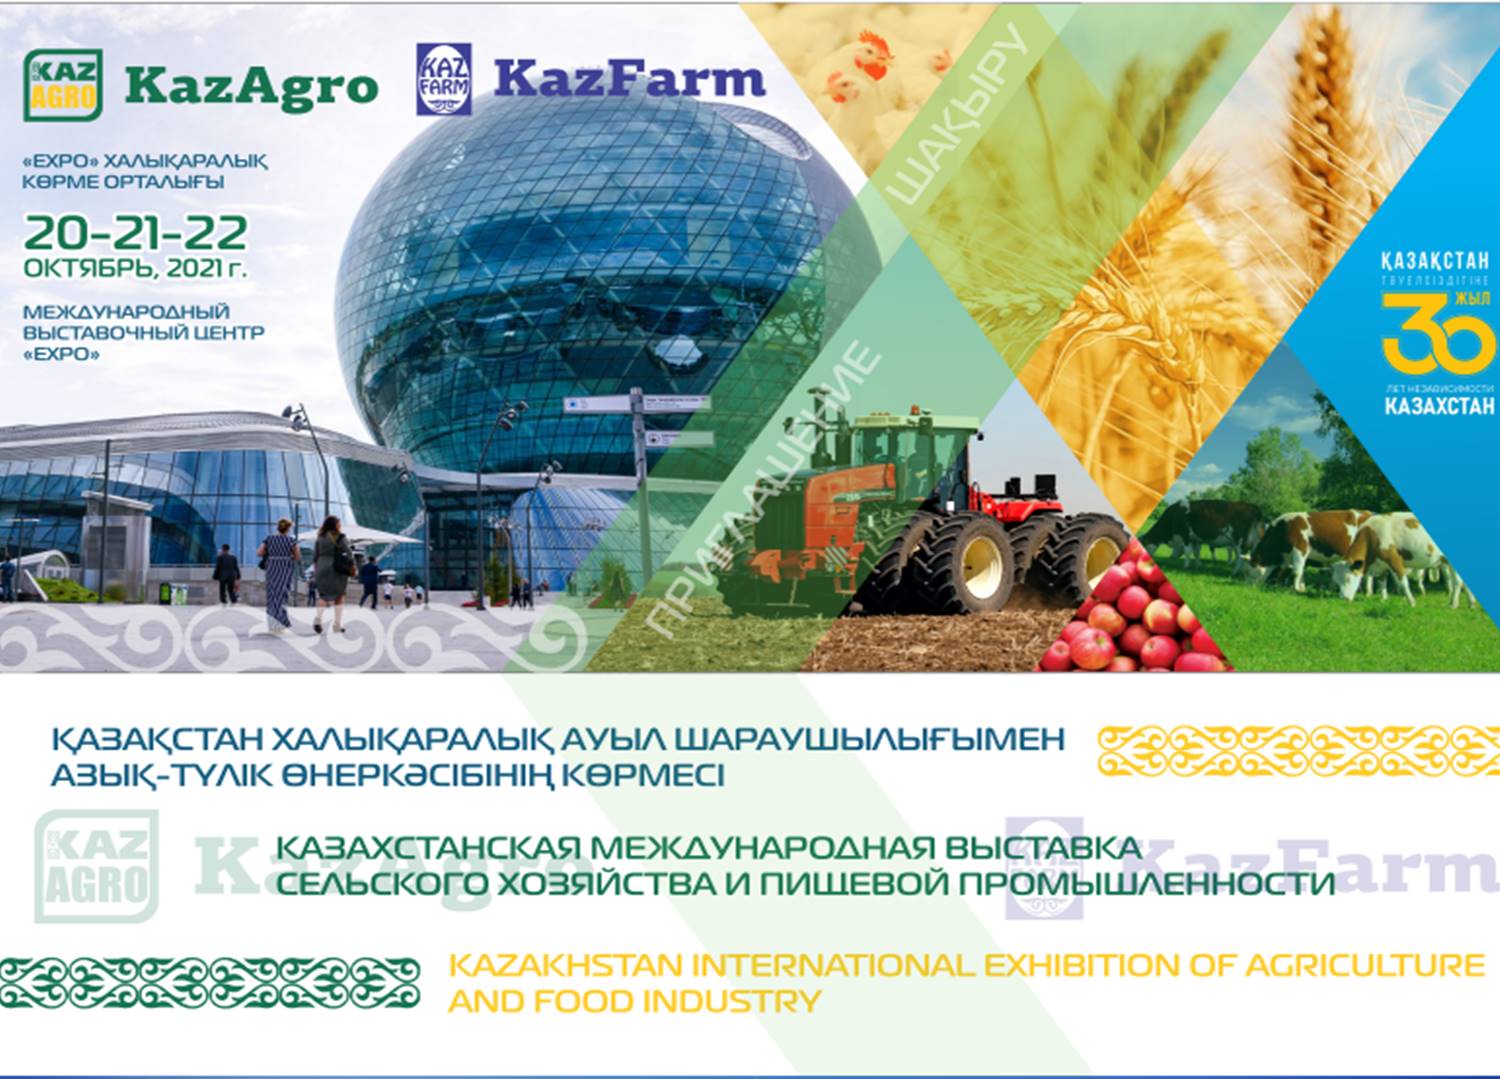 В Международном выставочном центре «EXPO» состоятся международные аграрные выставки KazAgro/KazFarm 2021